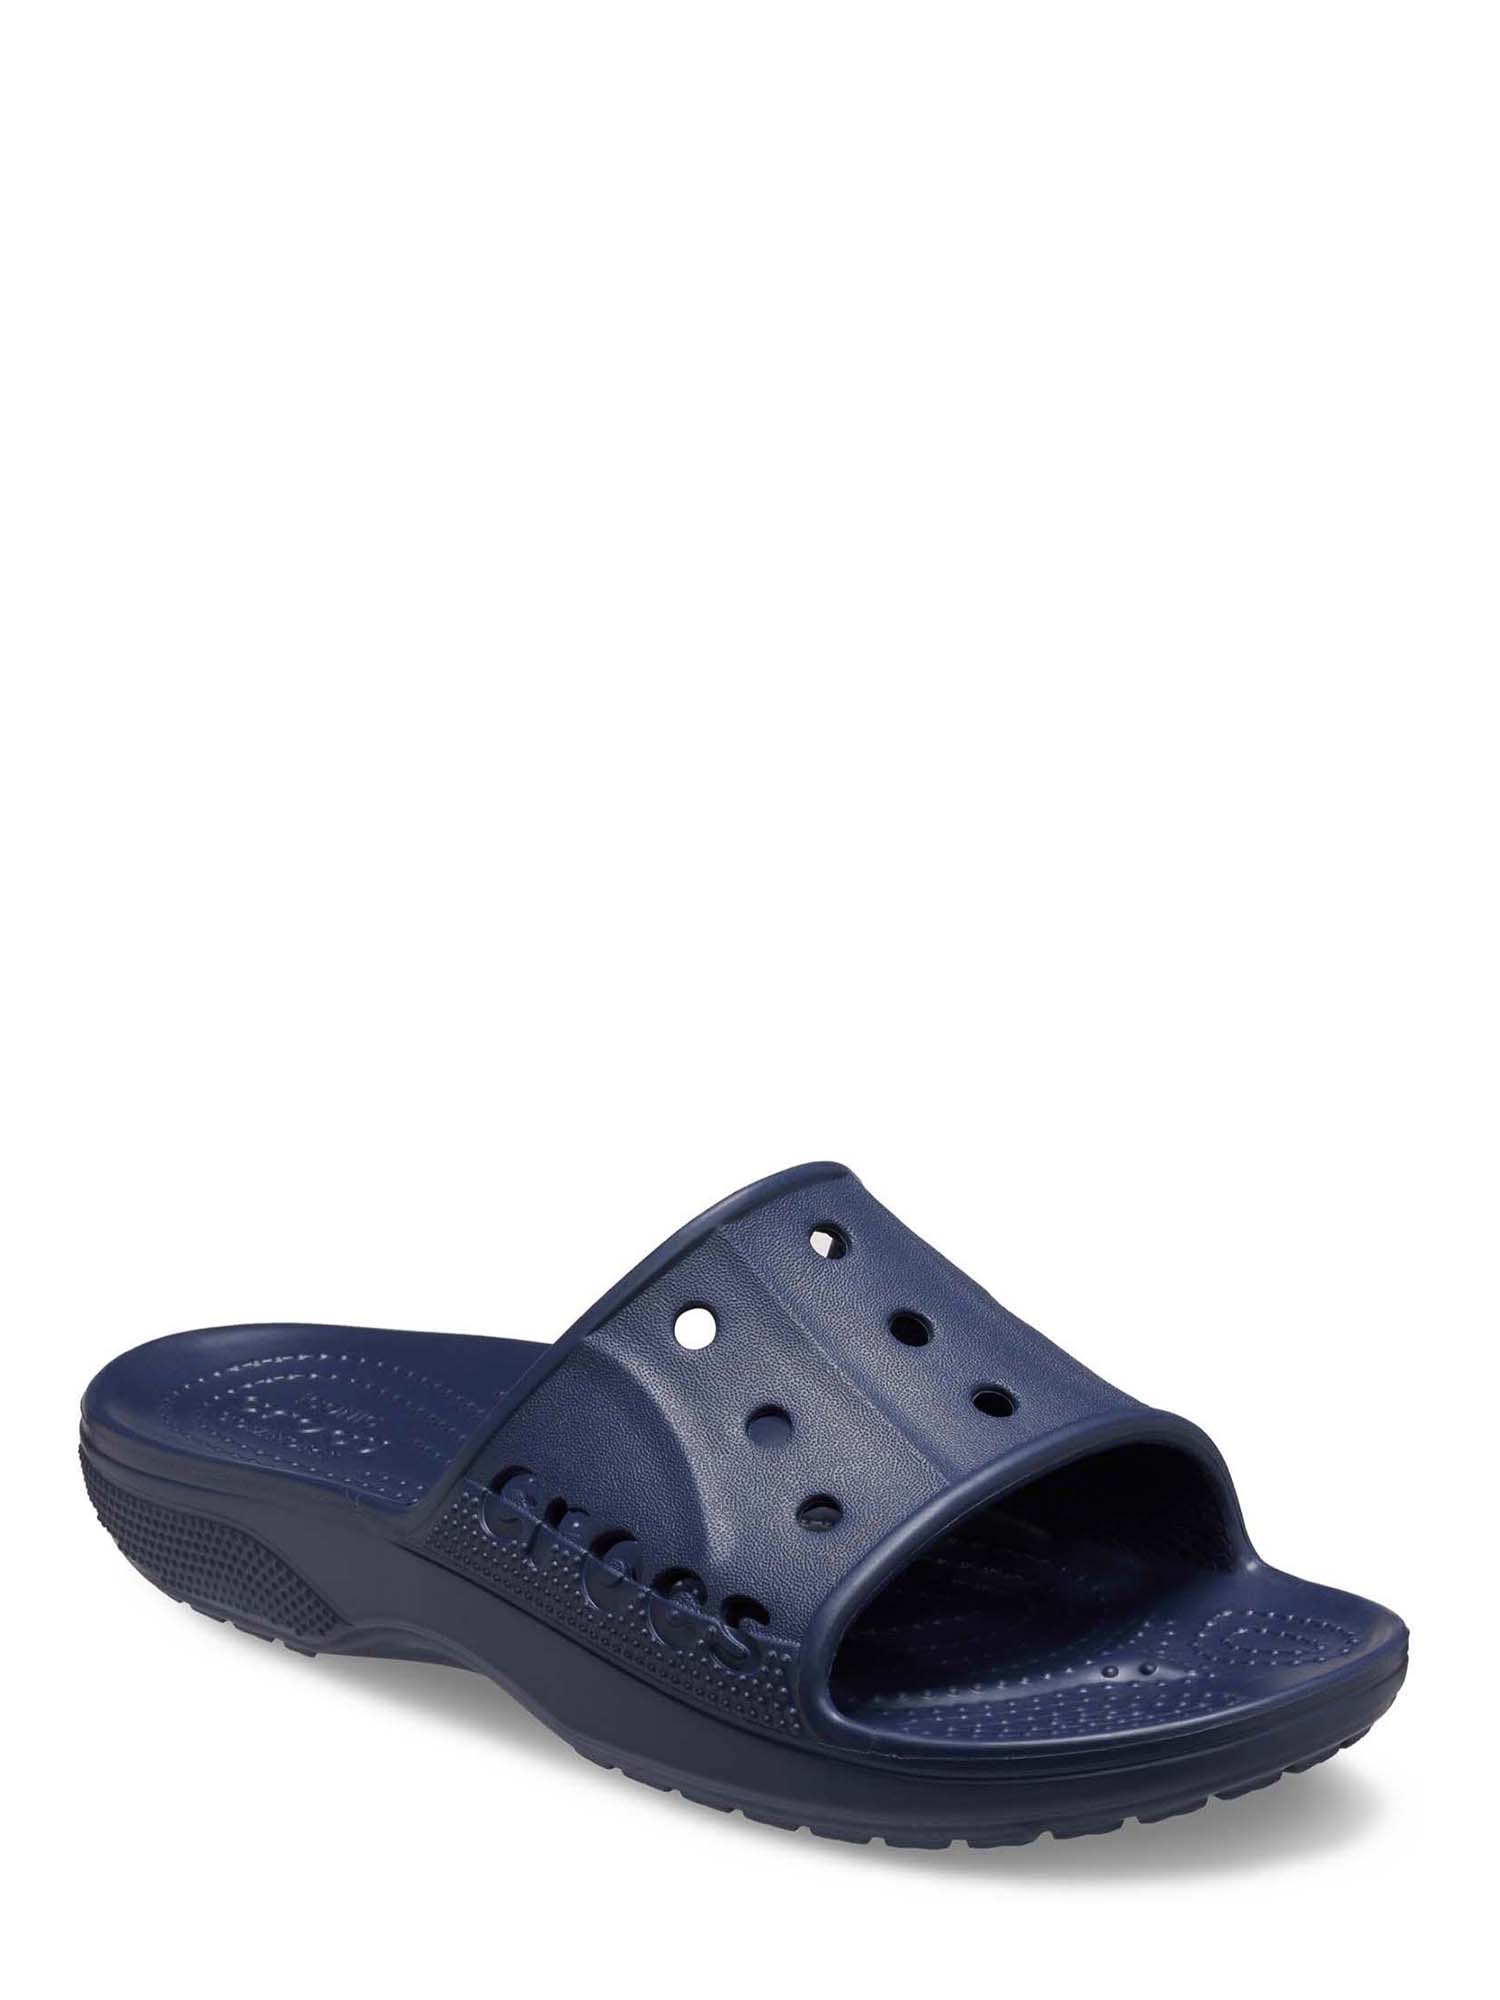 Crocs Men’s and Women’s Unisex Baya II Slide Sandals - image 1 of 5